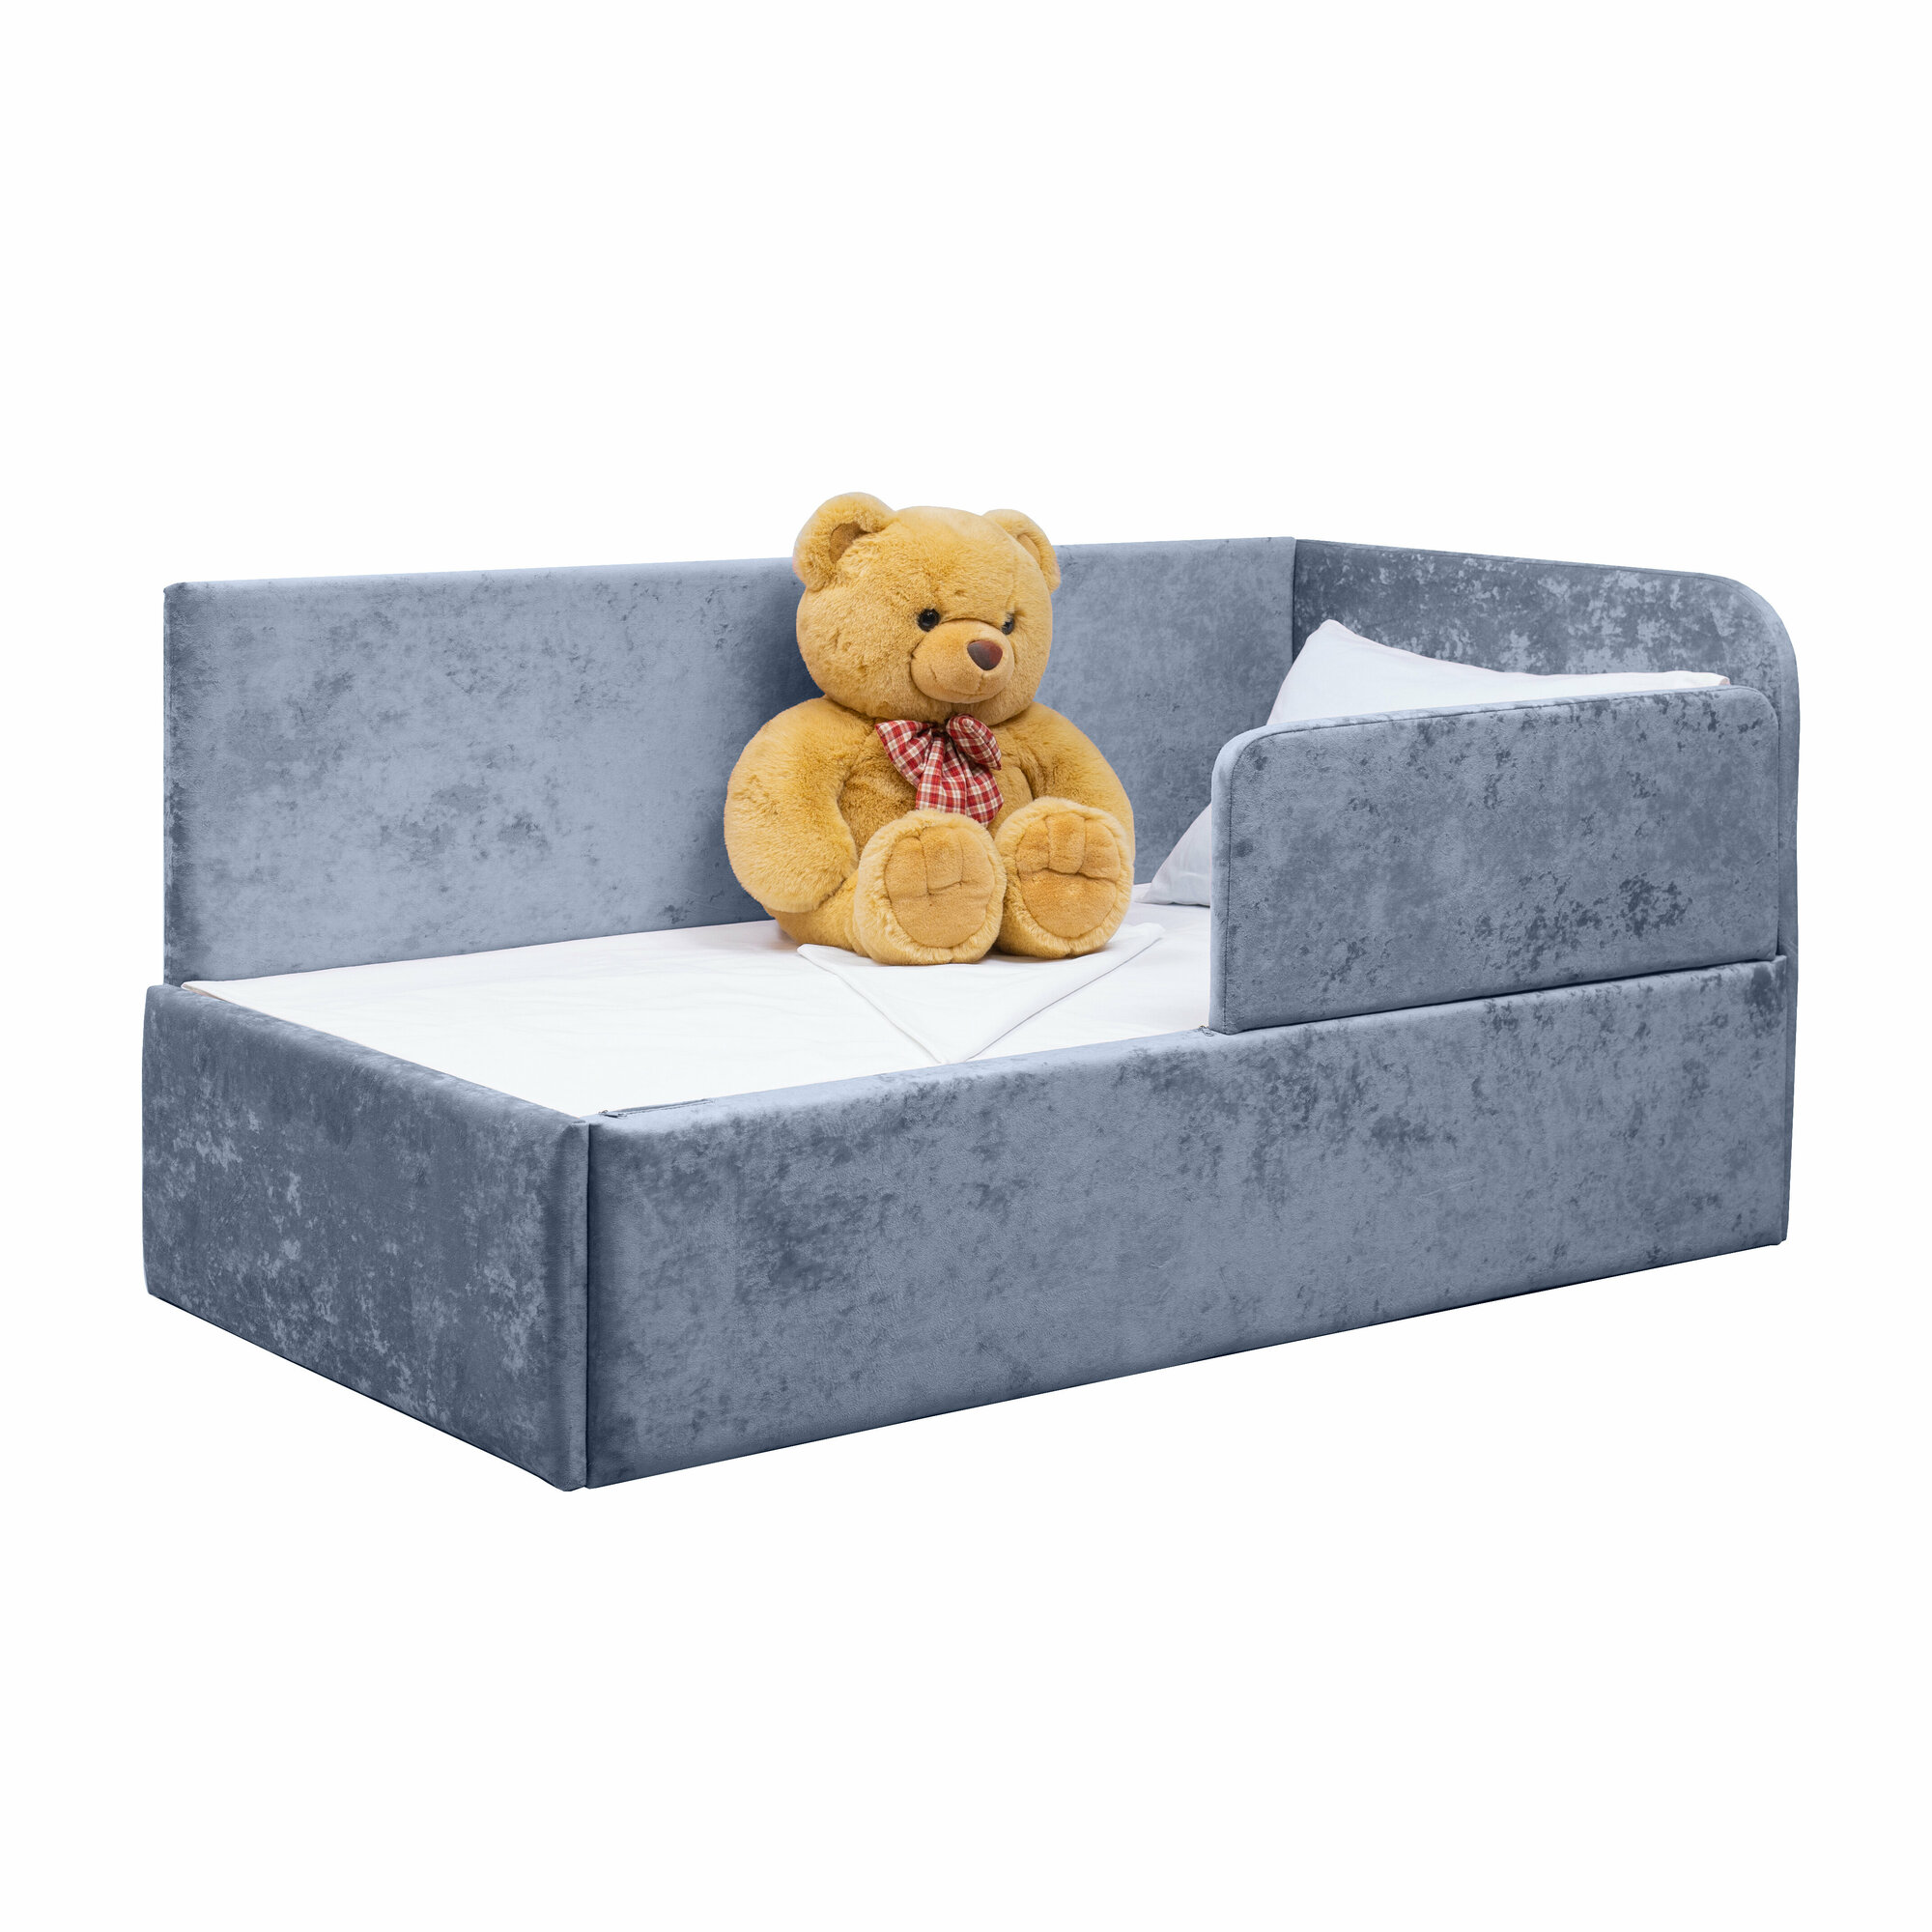 Кровать-диван Непоседа 200*90 голубая с матрасом, правый угол сборки